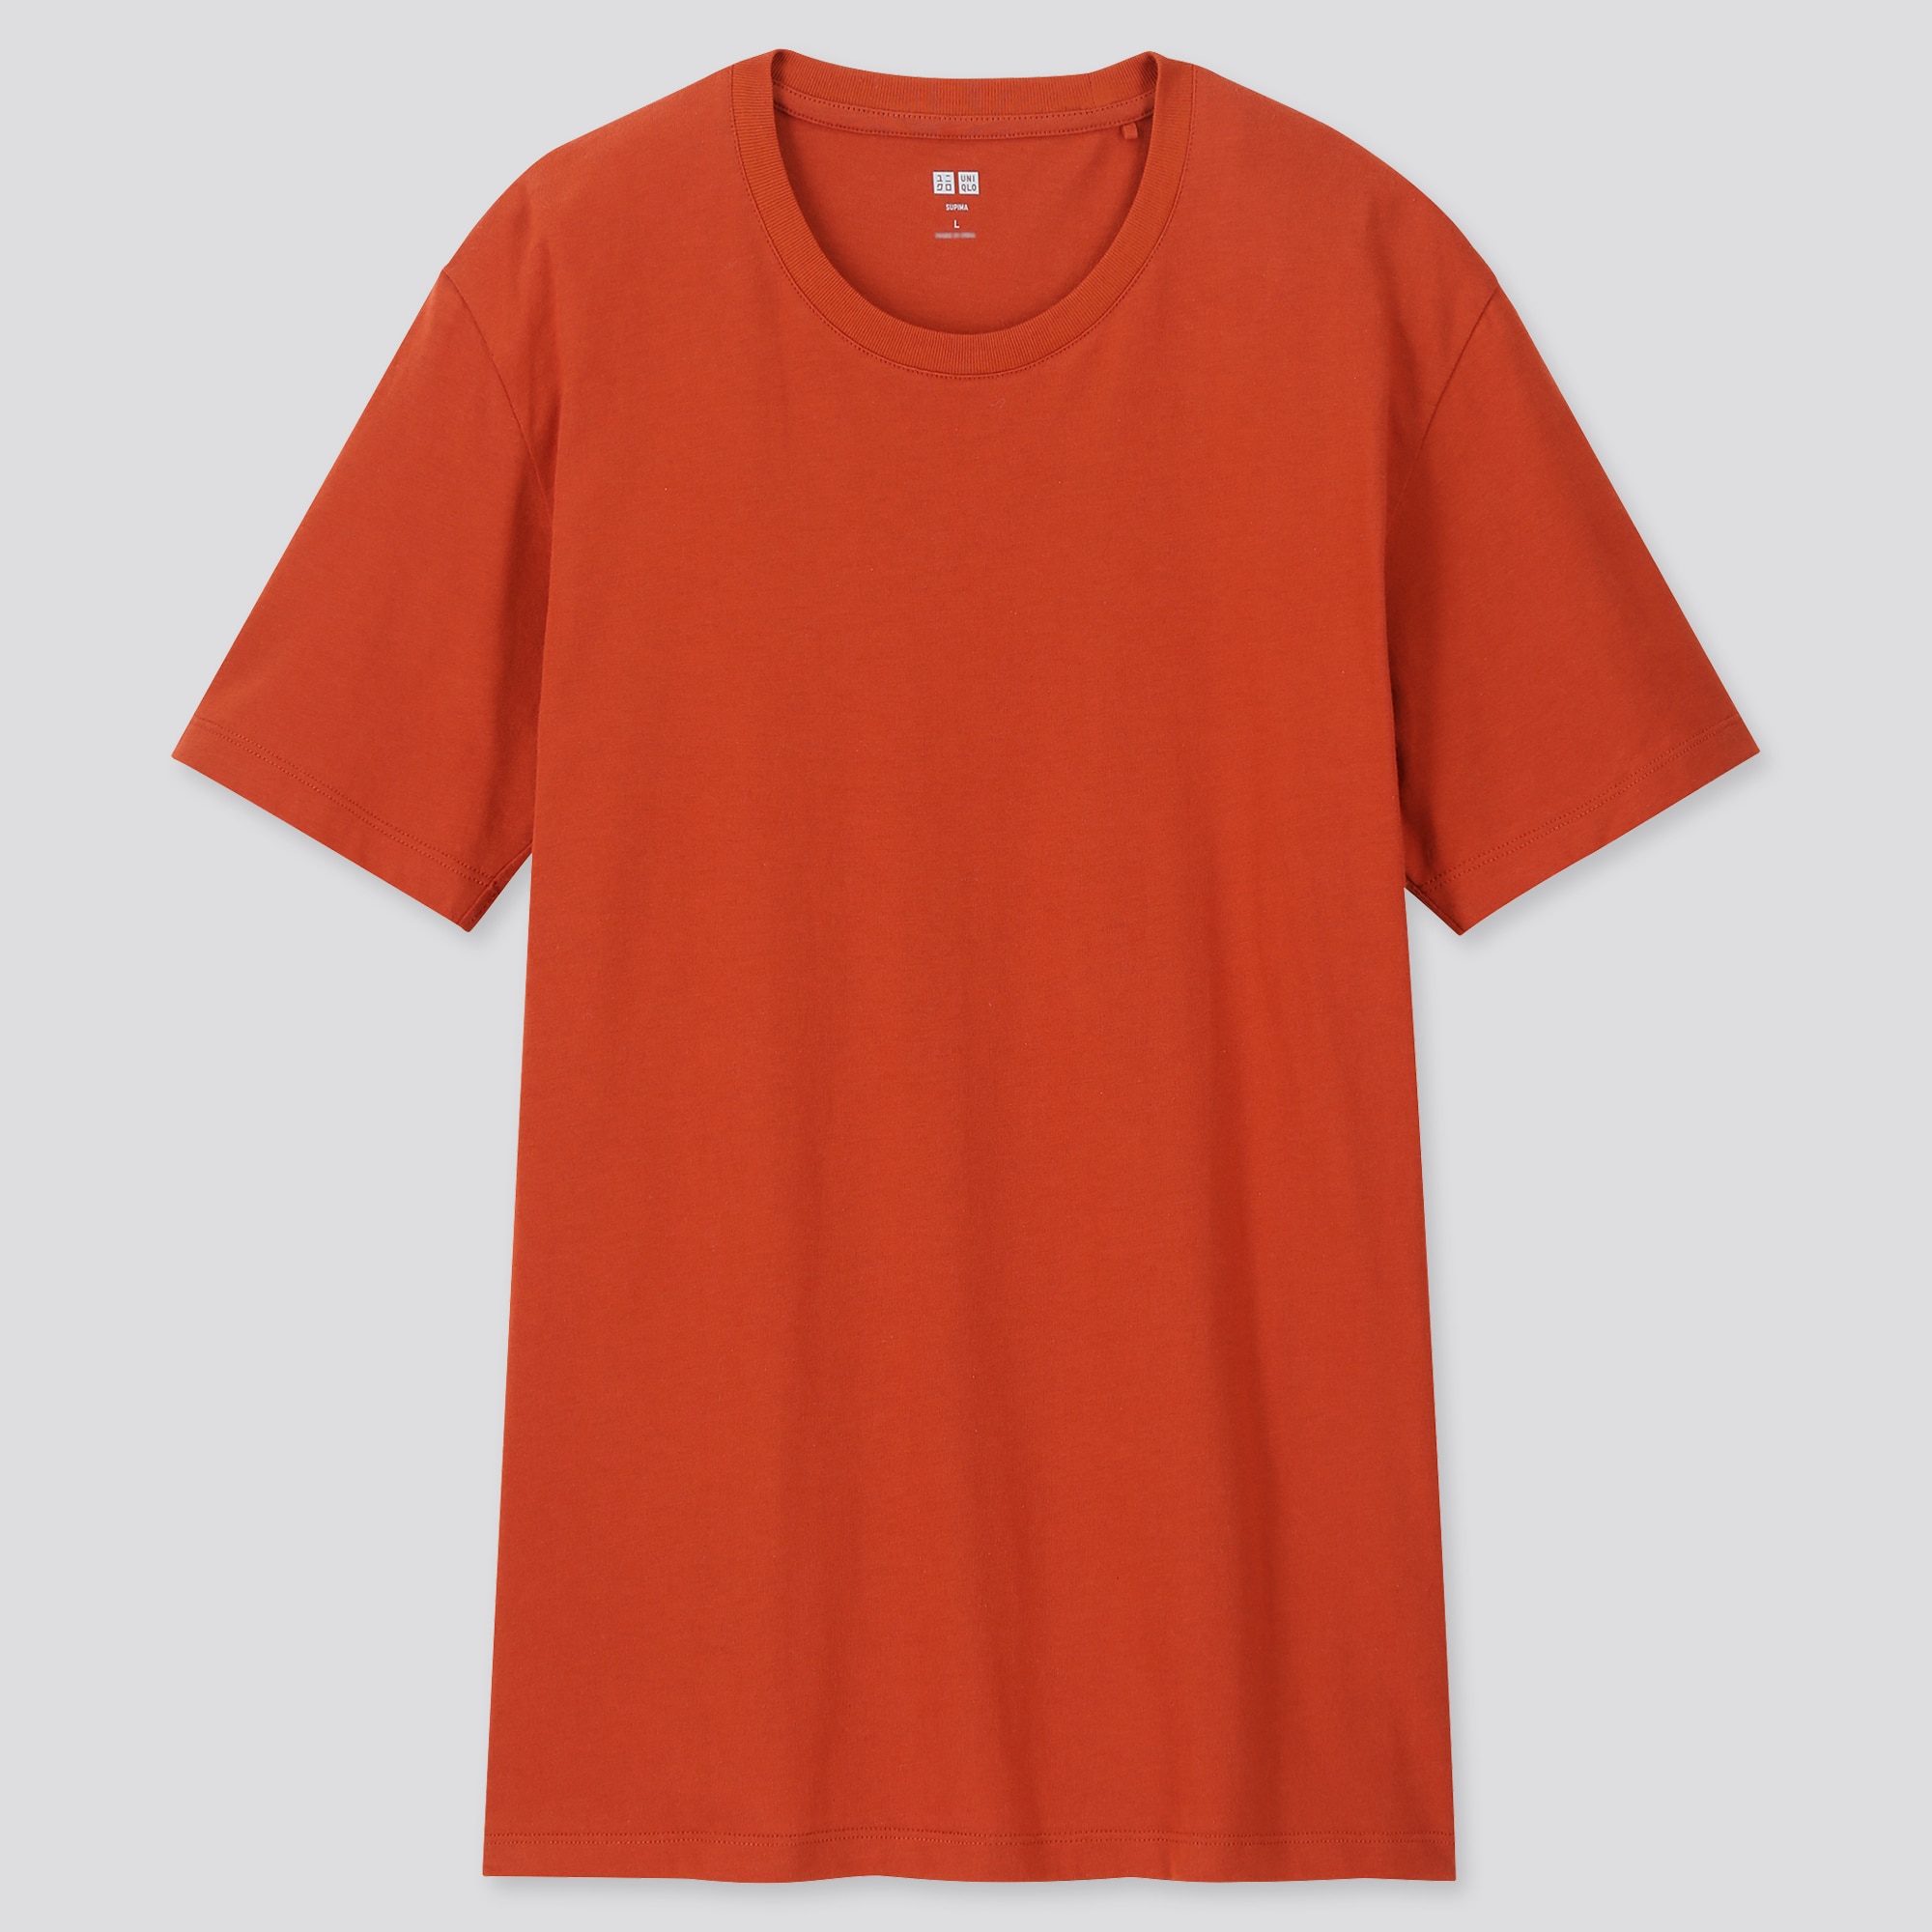 orange tee shirts